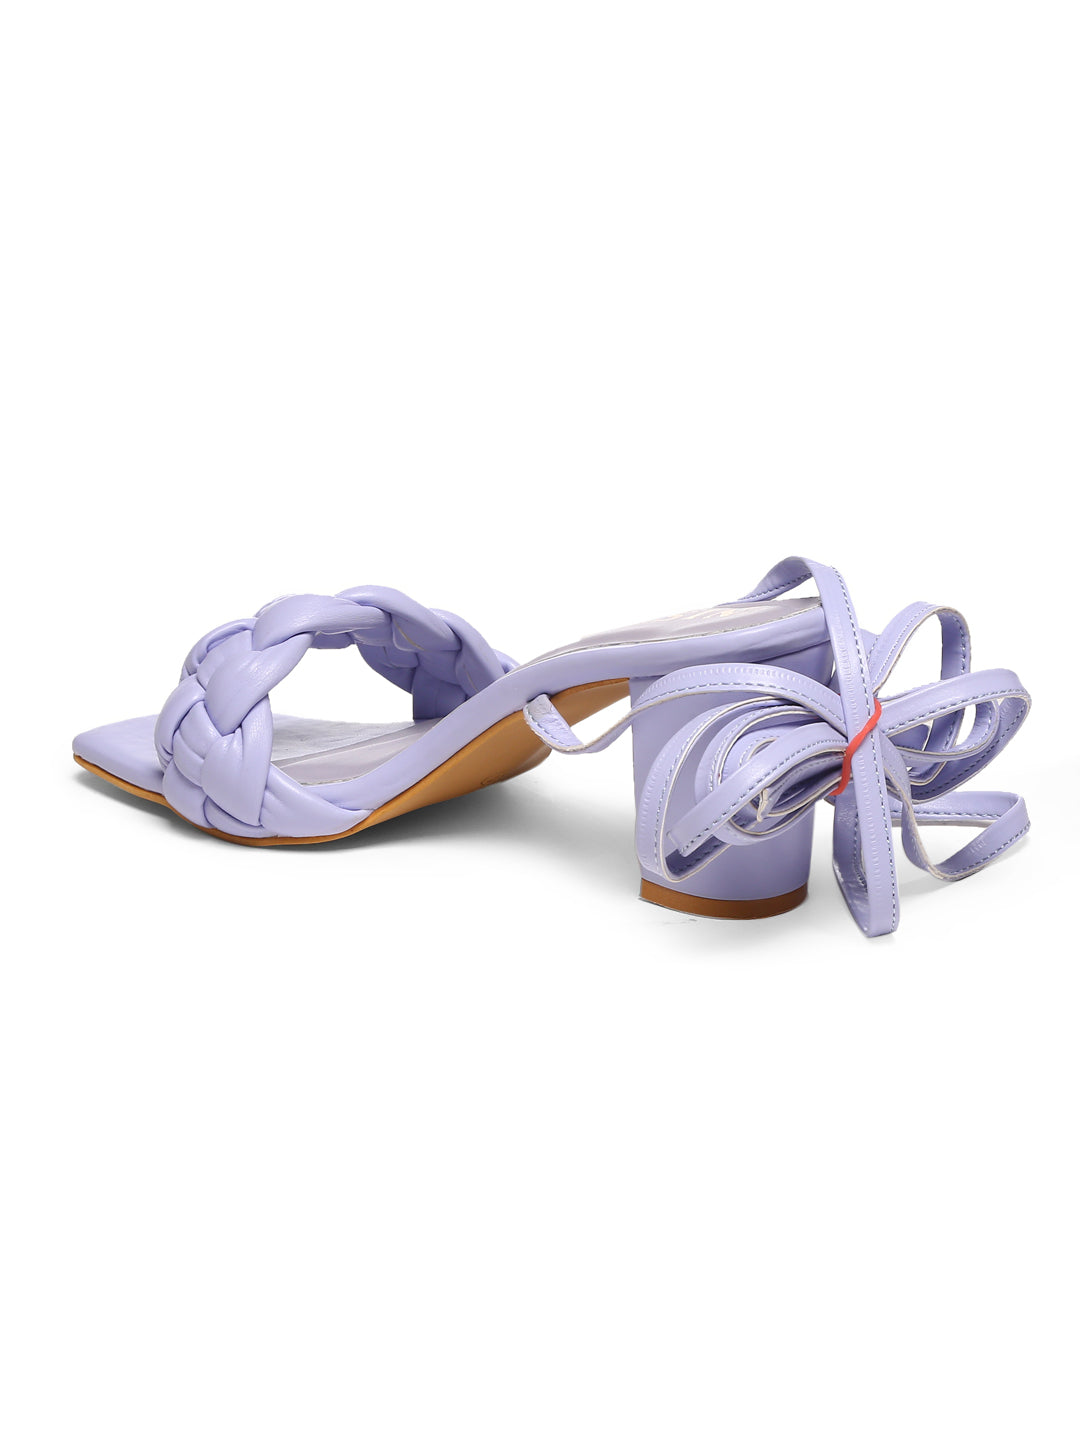 GNIST Lavender Braided Tie up Block Heel Sandal